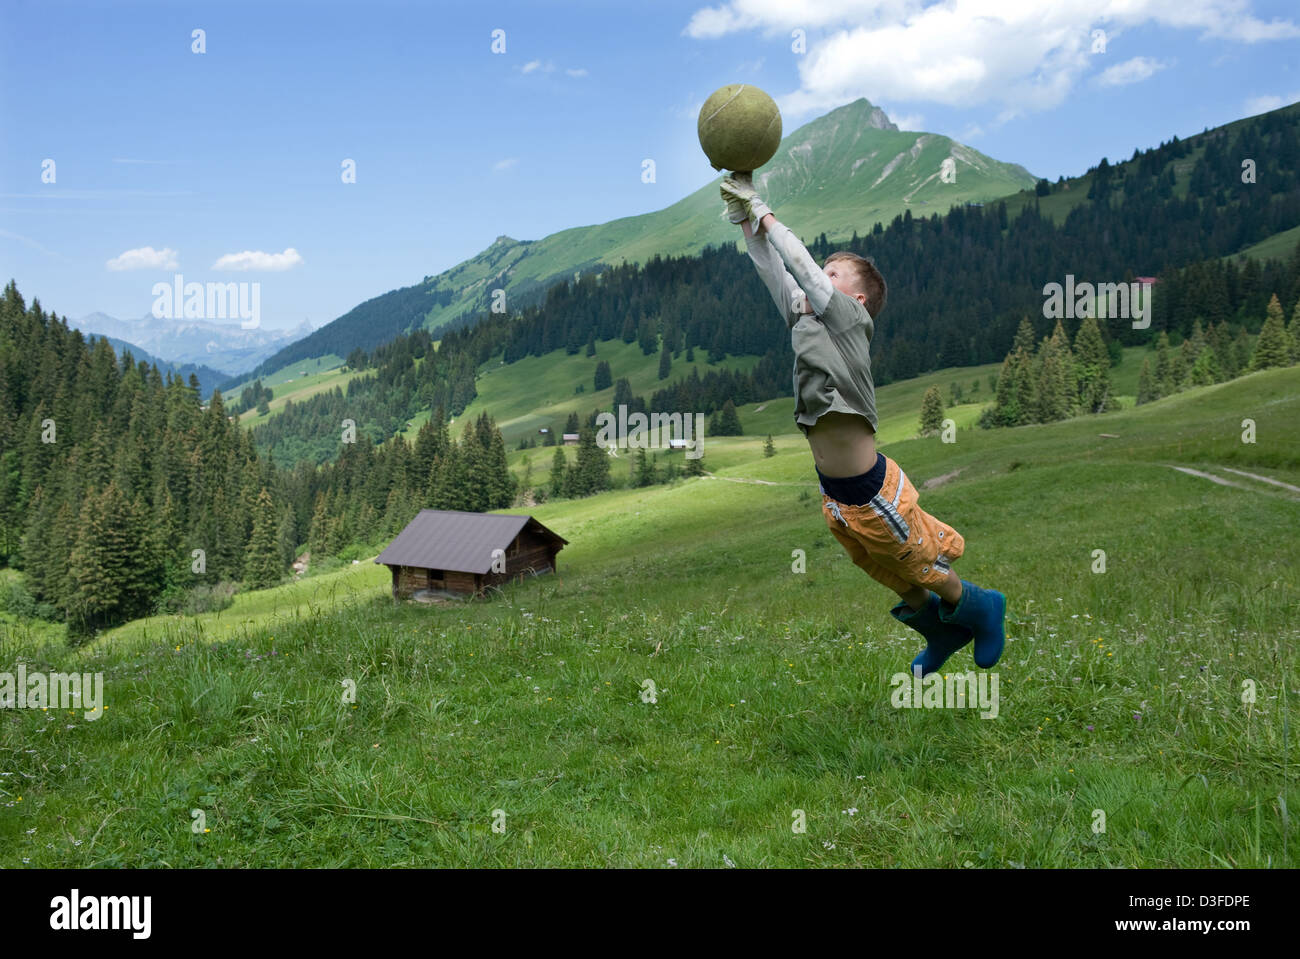 Blatti Alm, Suisse, un garçon joue ball Banque D'Images